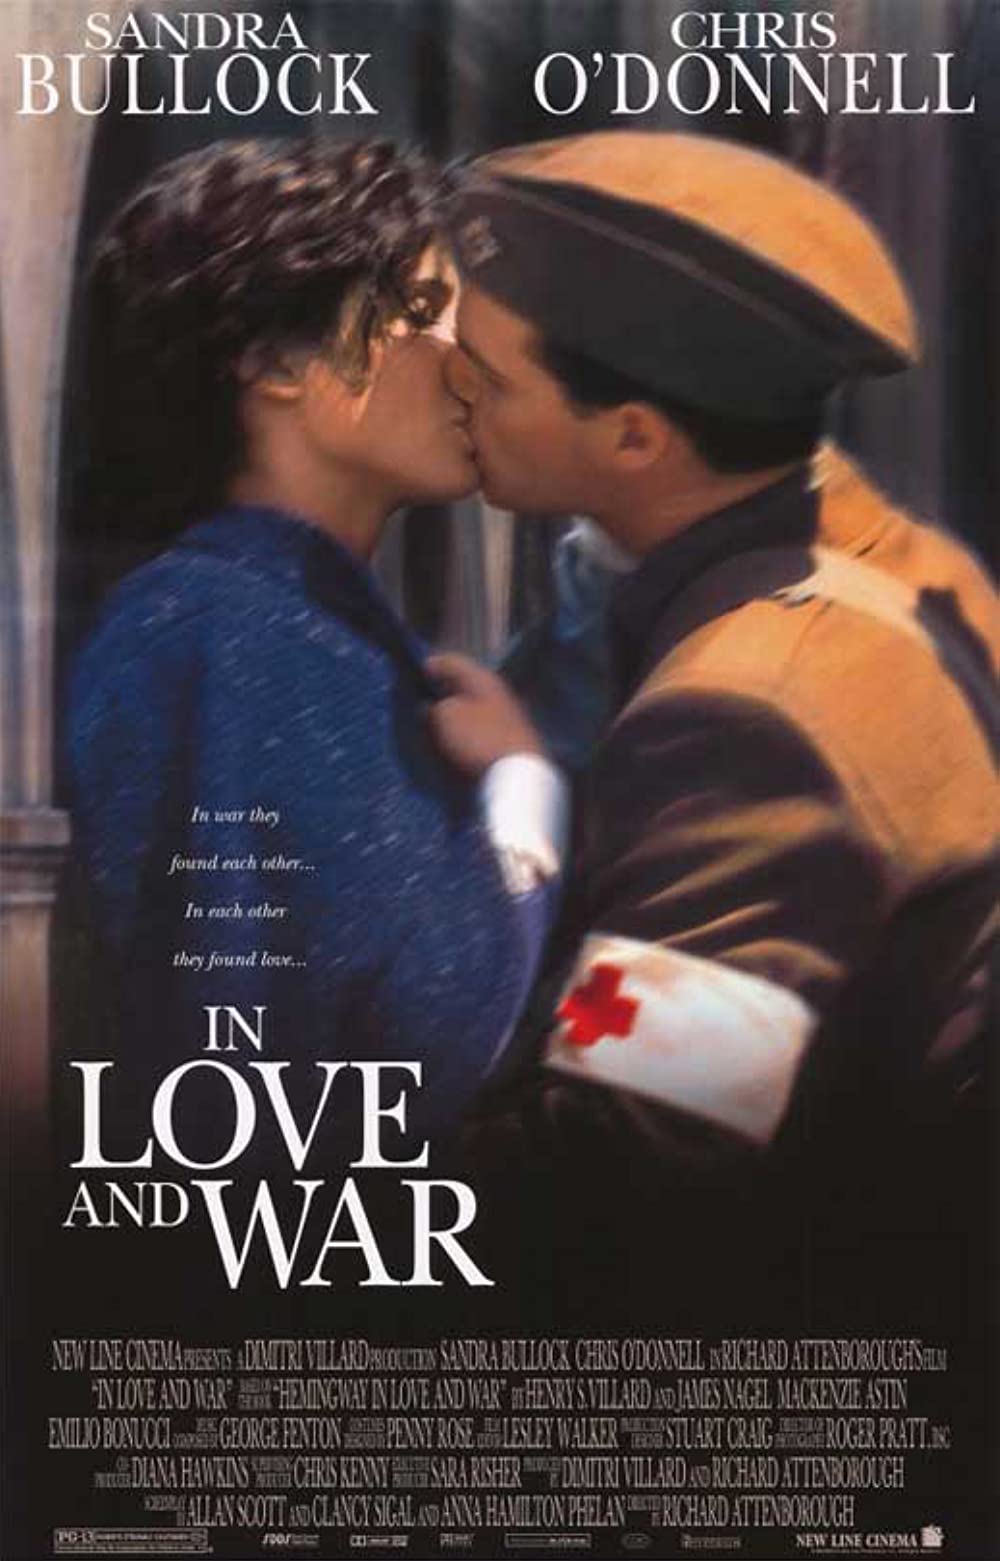 Filmbeschreibung zu In Love and War